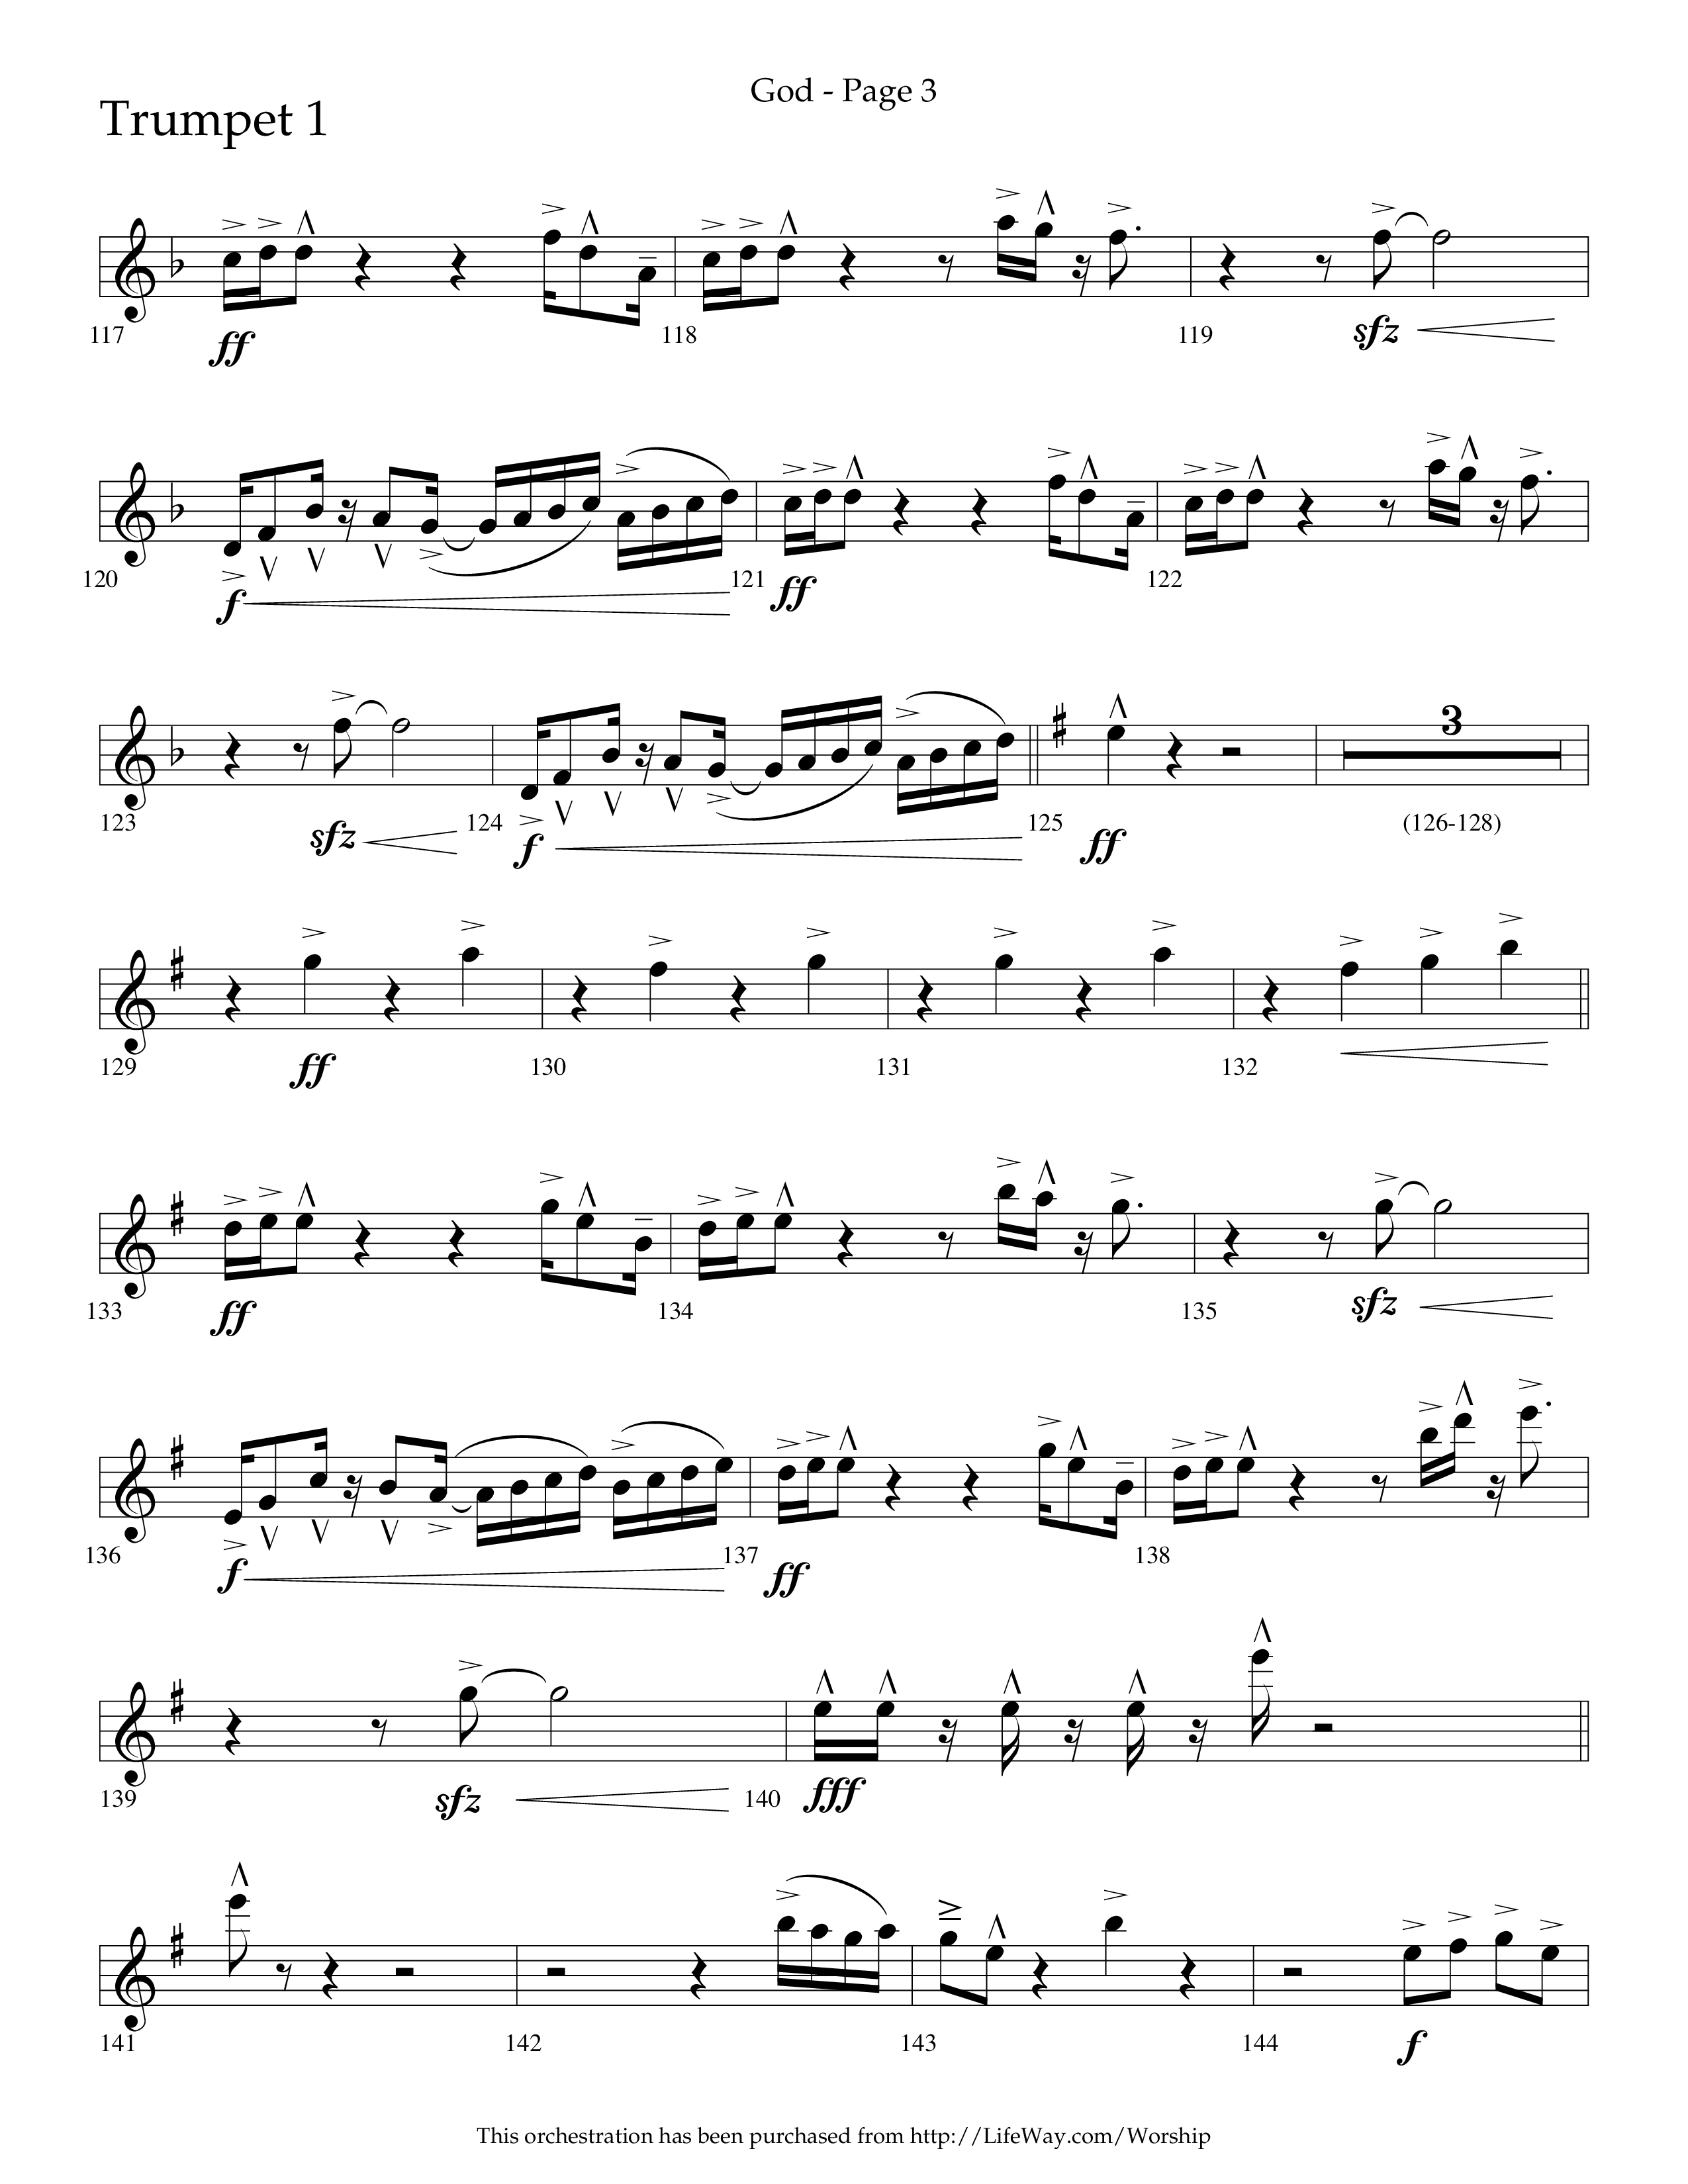 God (Choral Anthem SATB) Trumpet 1 (Lifeway Choral / Arr. Cliff Duren)